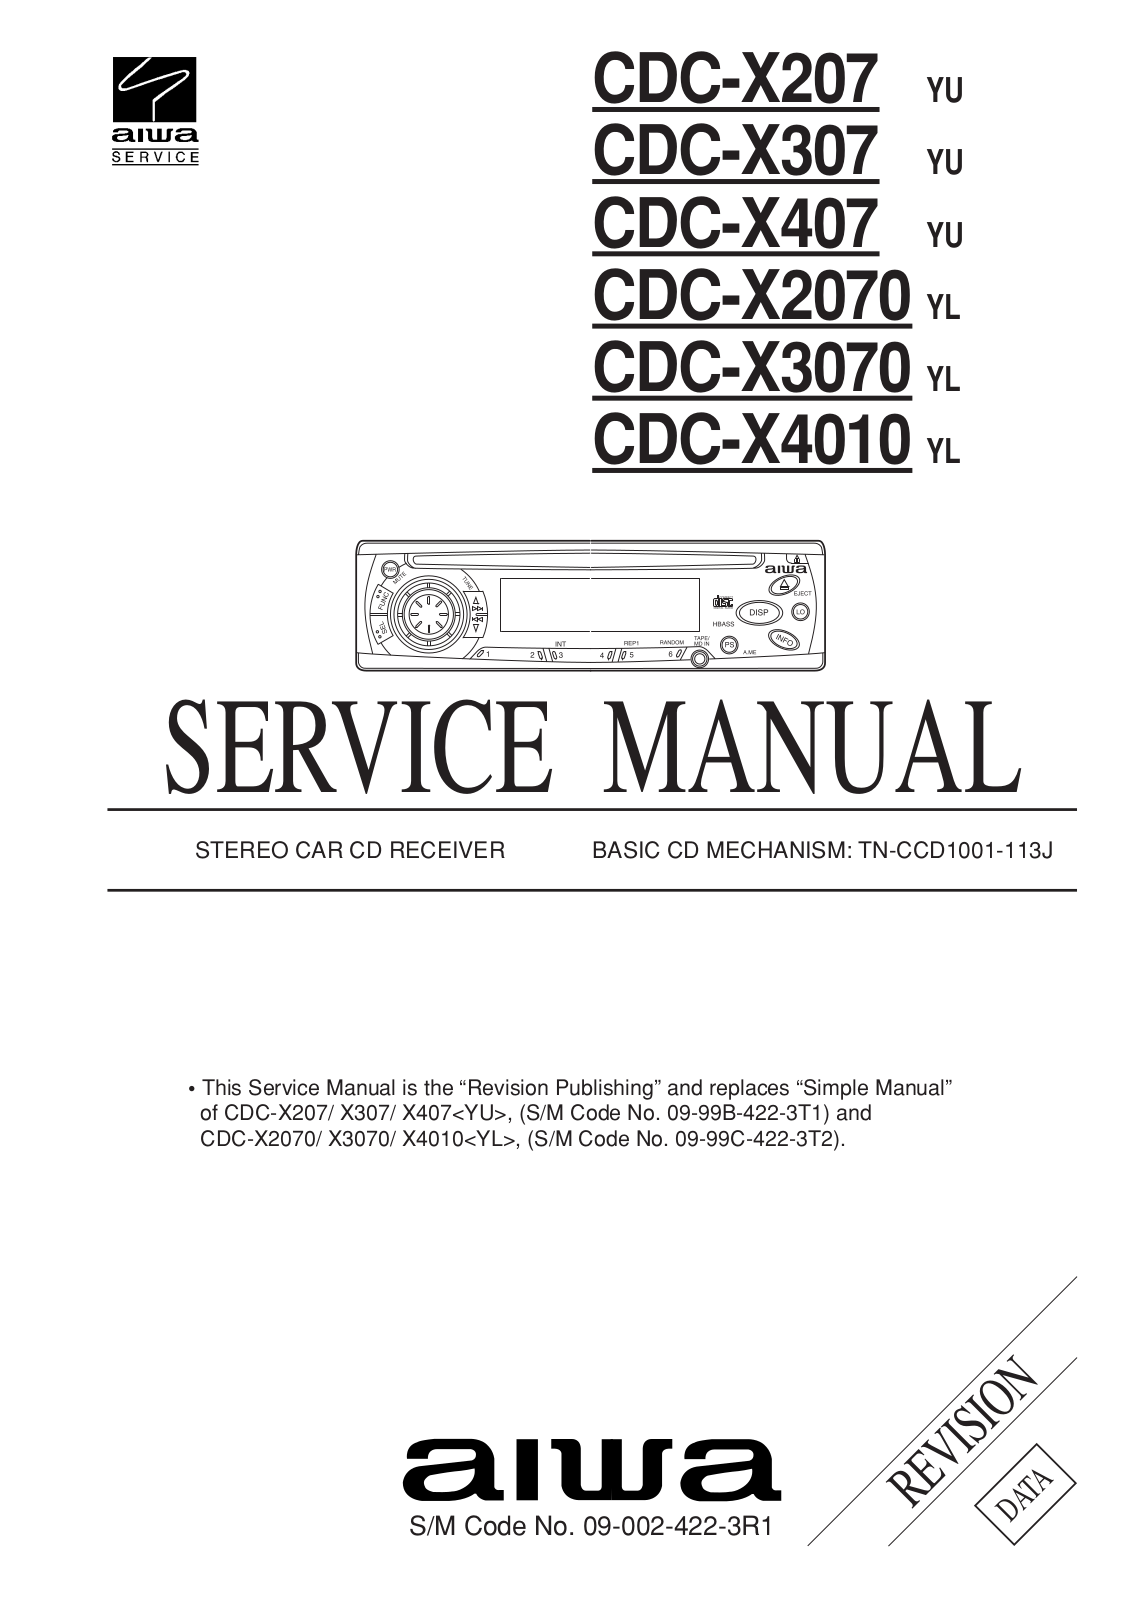 AIWA CDC-X207, CDC-X307, CDC-X407, CDC-X2070, CDC-X3070 Service Manual